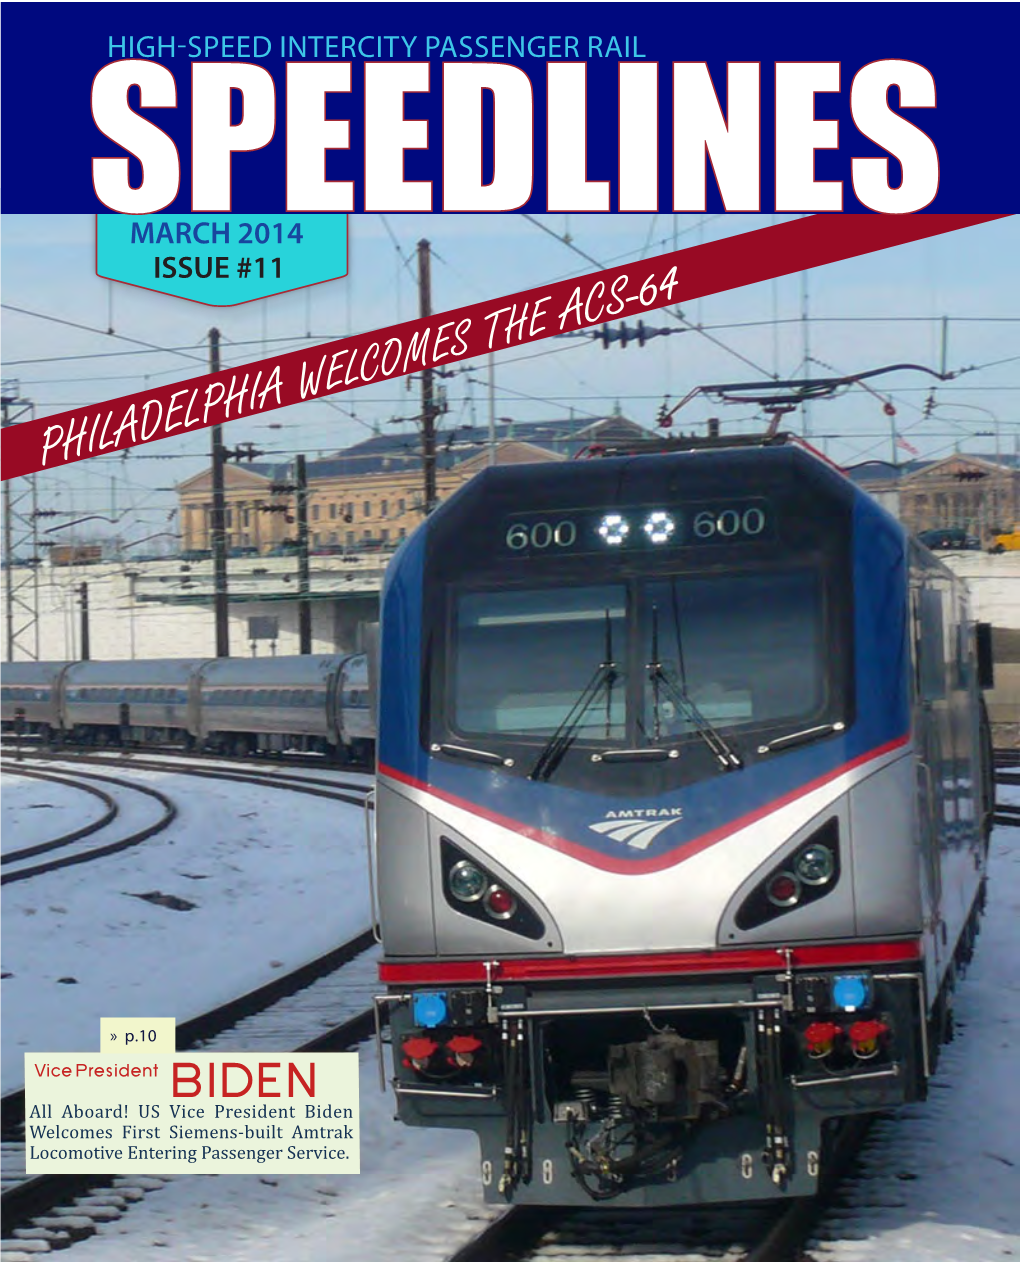 SPEEDLINES, Issue #11, High-Speed Intercity Passenger